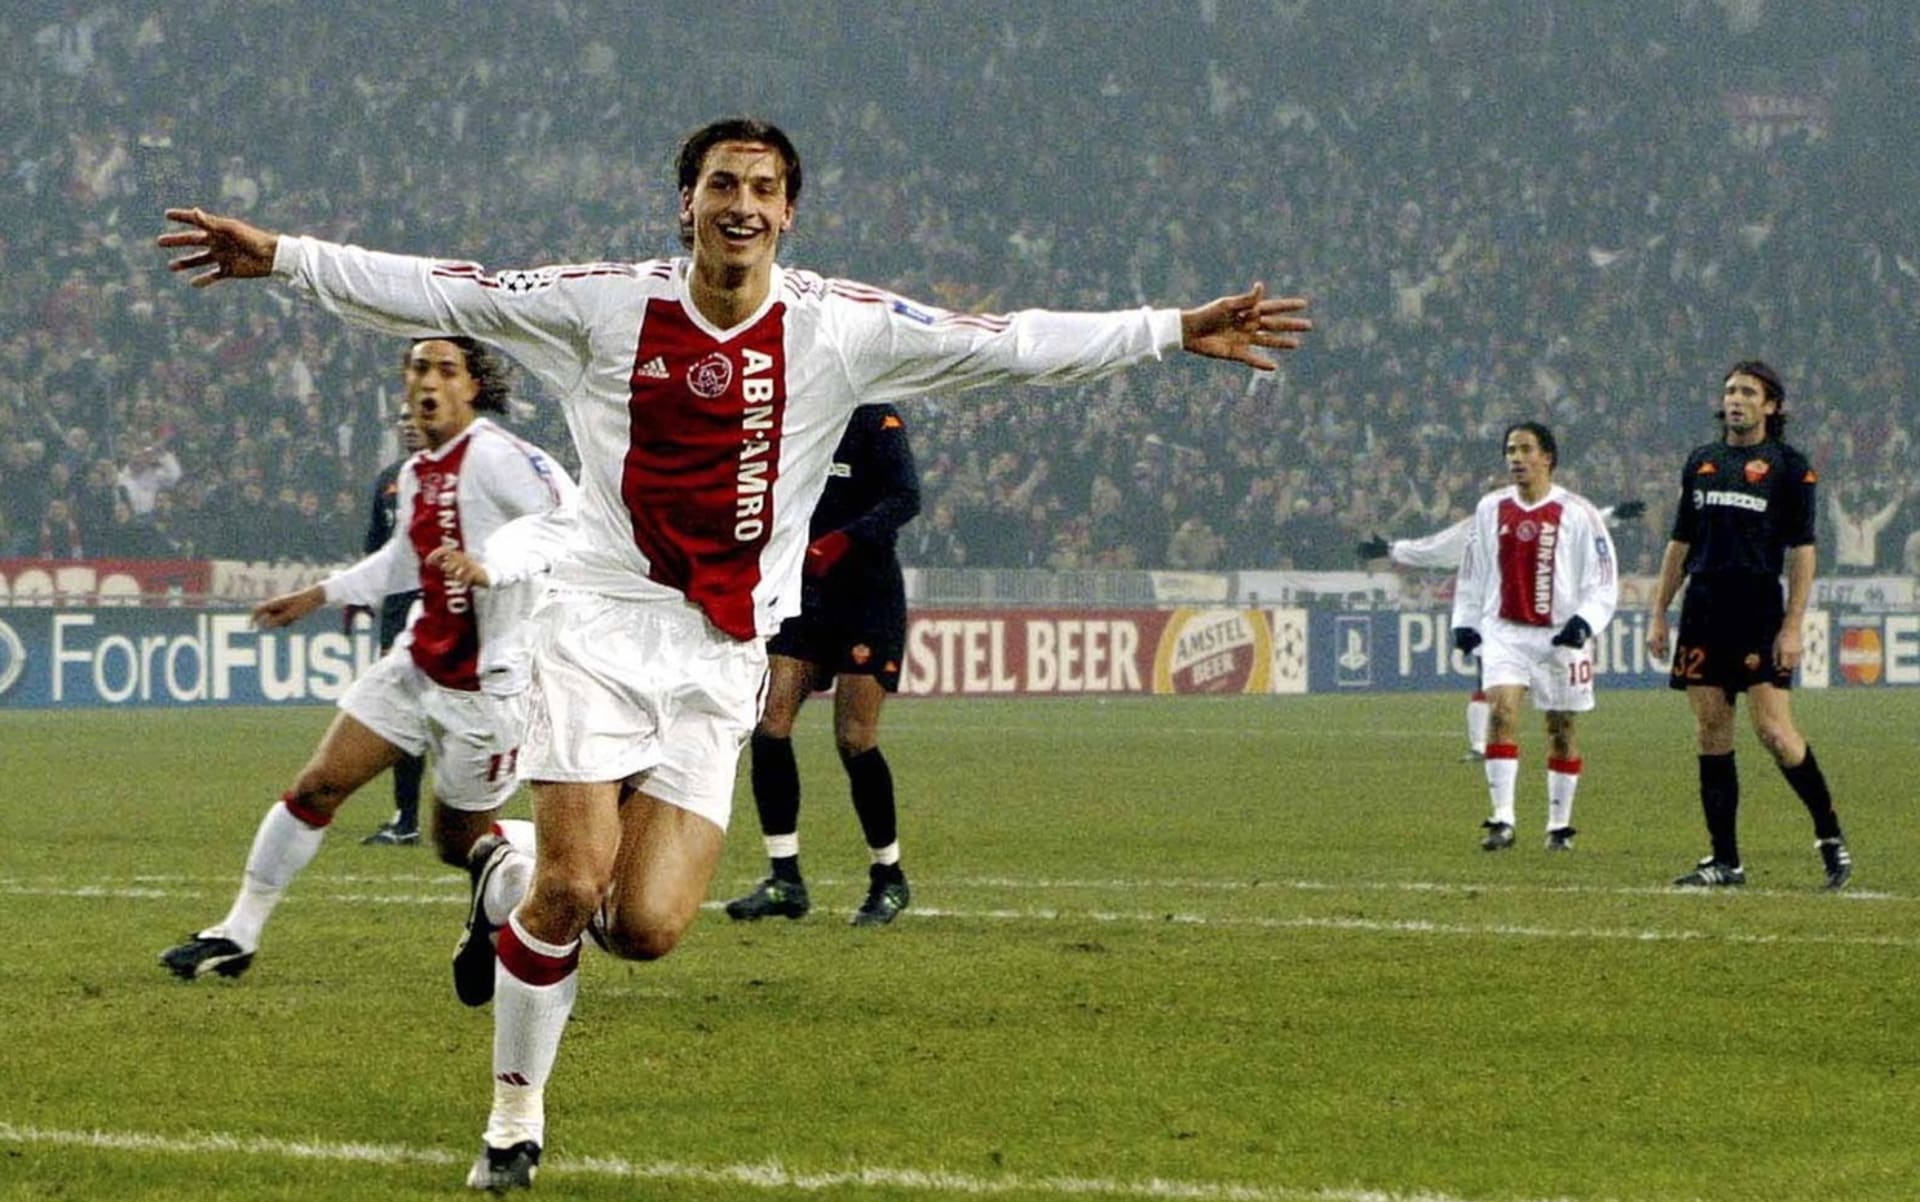 Tři roky ze své velmi bohaté kariéry strávil Zlatan Ibrahimovic v Ajaxu Amsterdam, kde se potkal s Tomášem Galáskem. 